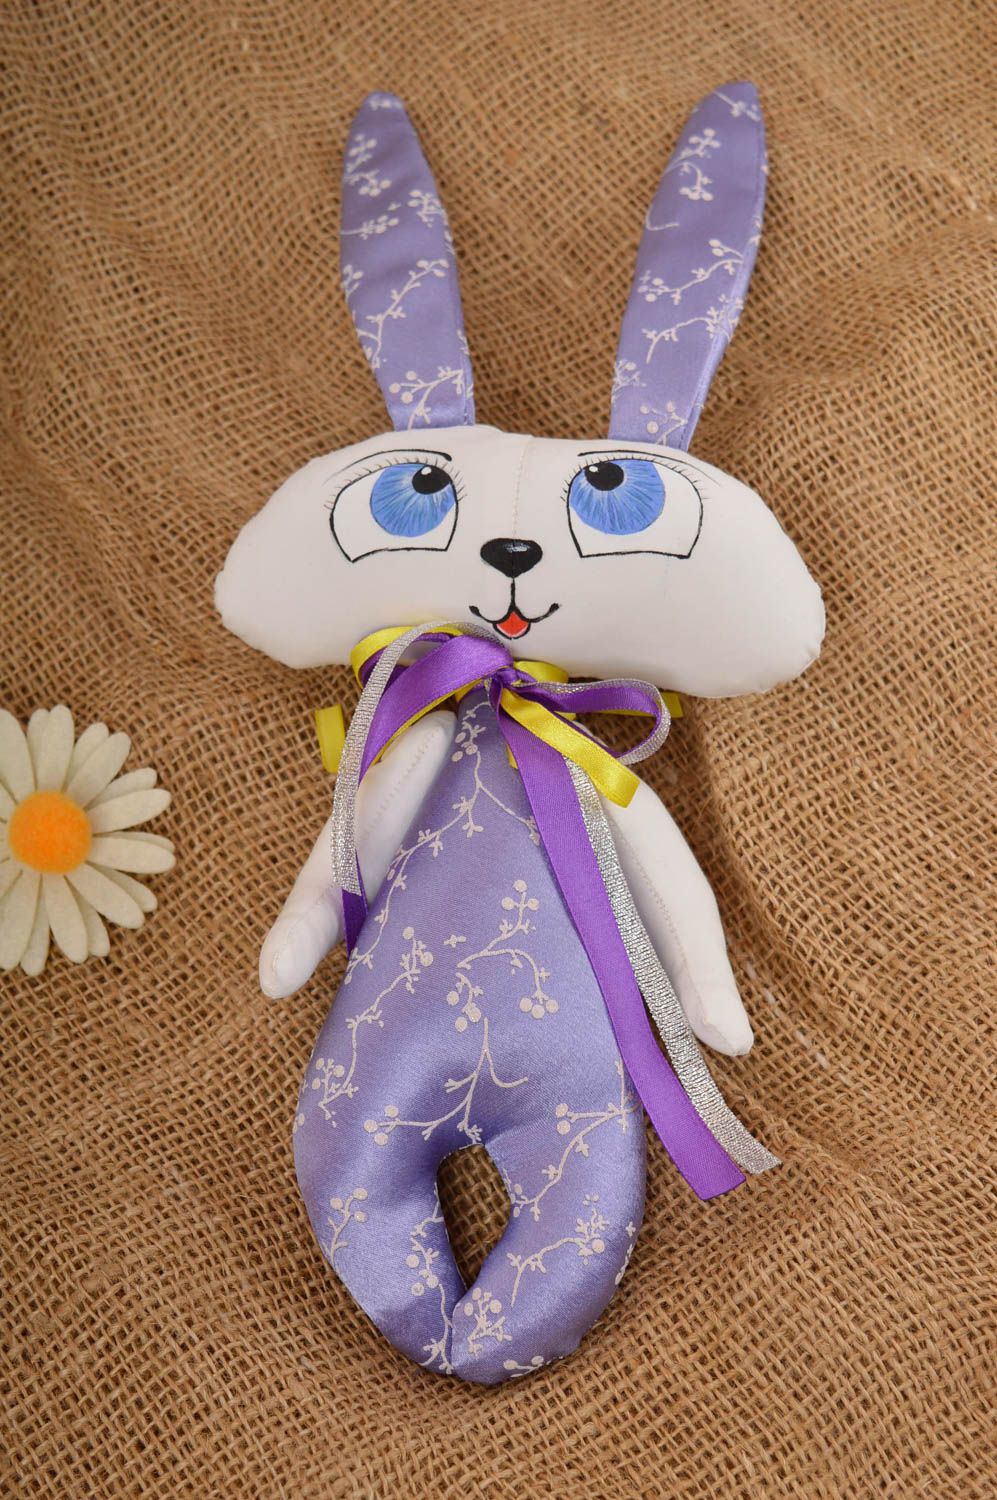 Jouet lapin Peluche faite main en tissu peinte à l'acrylique Cadeau pour enfant photo 1